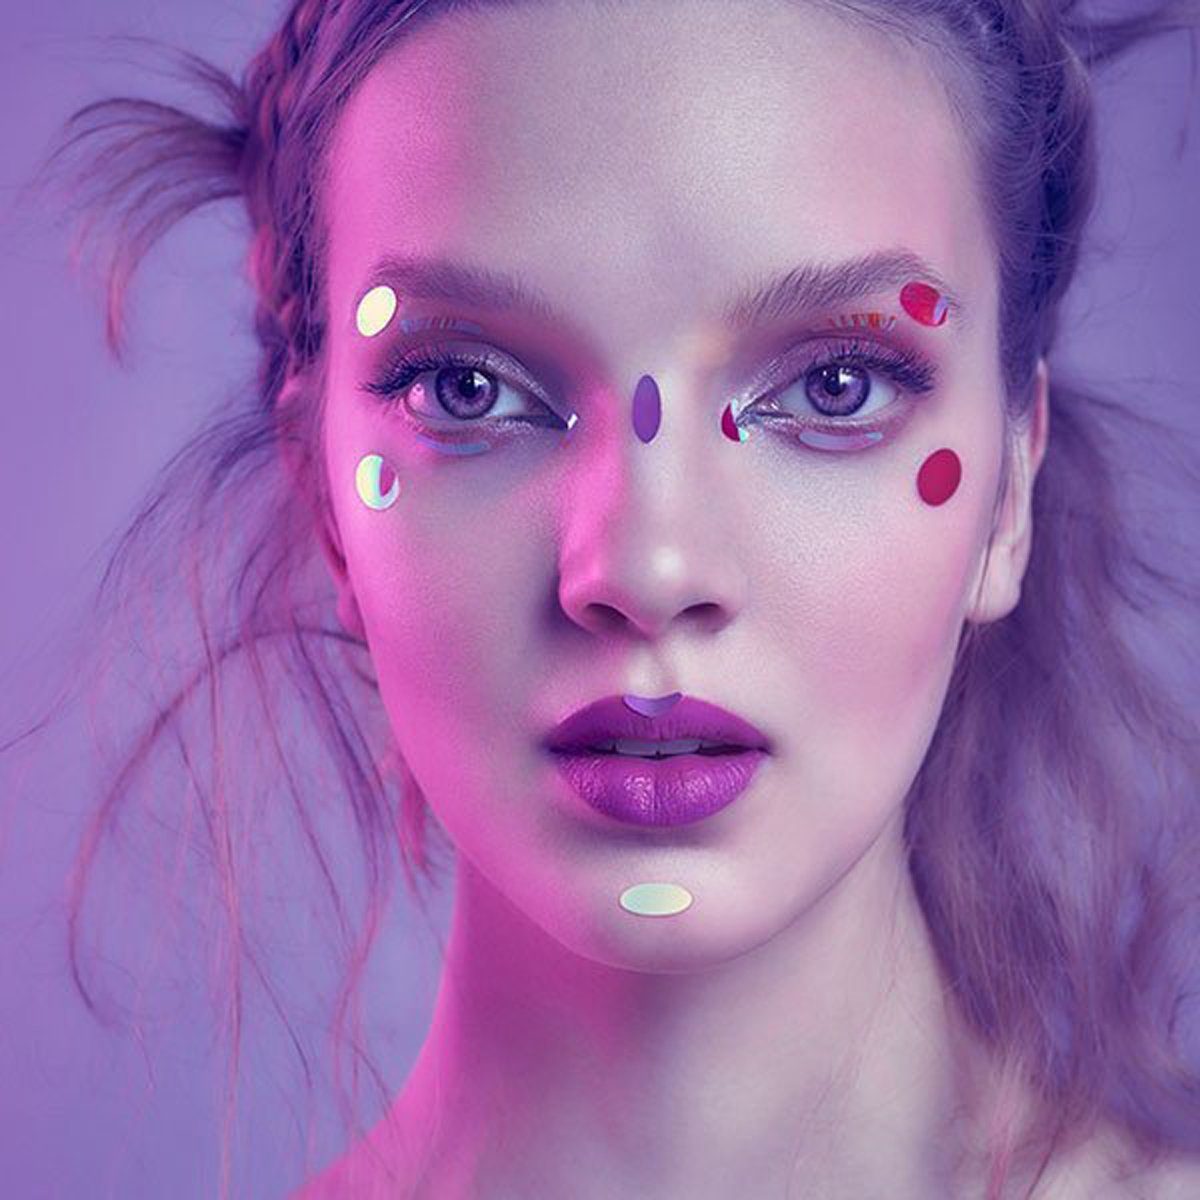 Dazzle Dots / Face Lace by Phyllis Cohen